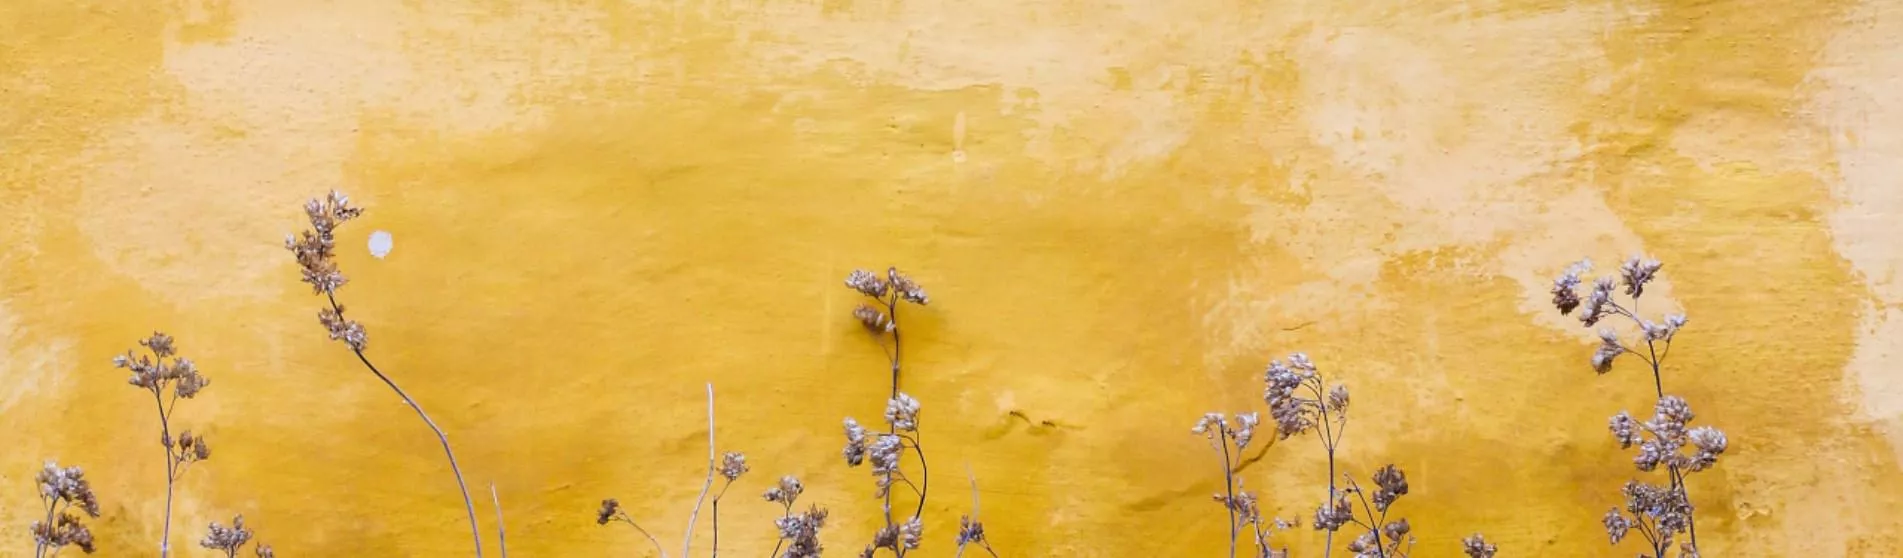 mona-eendra-flowers-yellow-background 1903x558